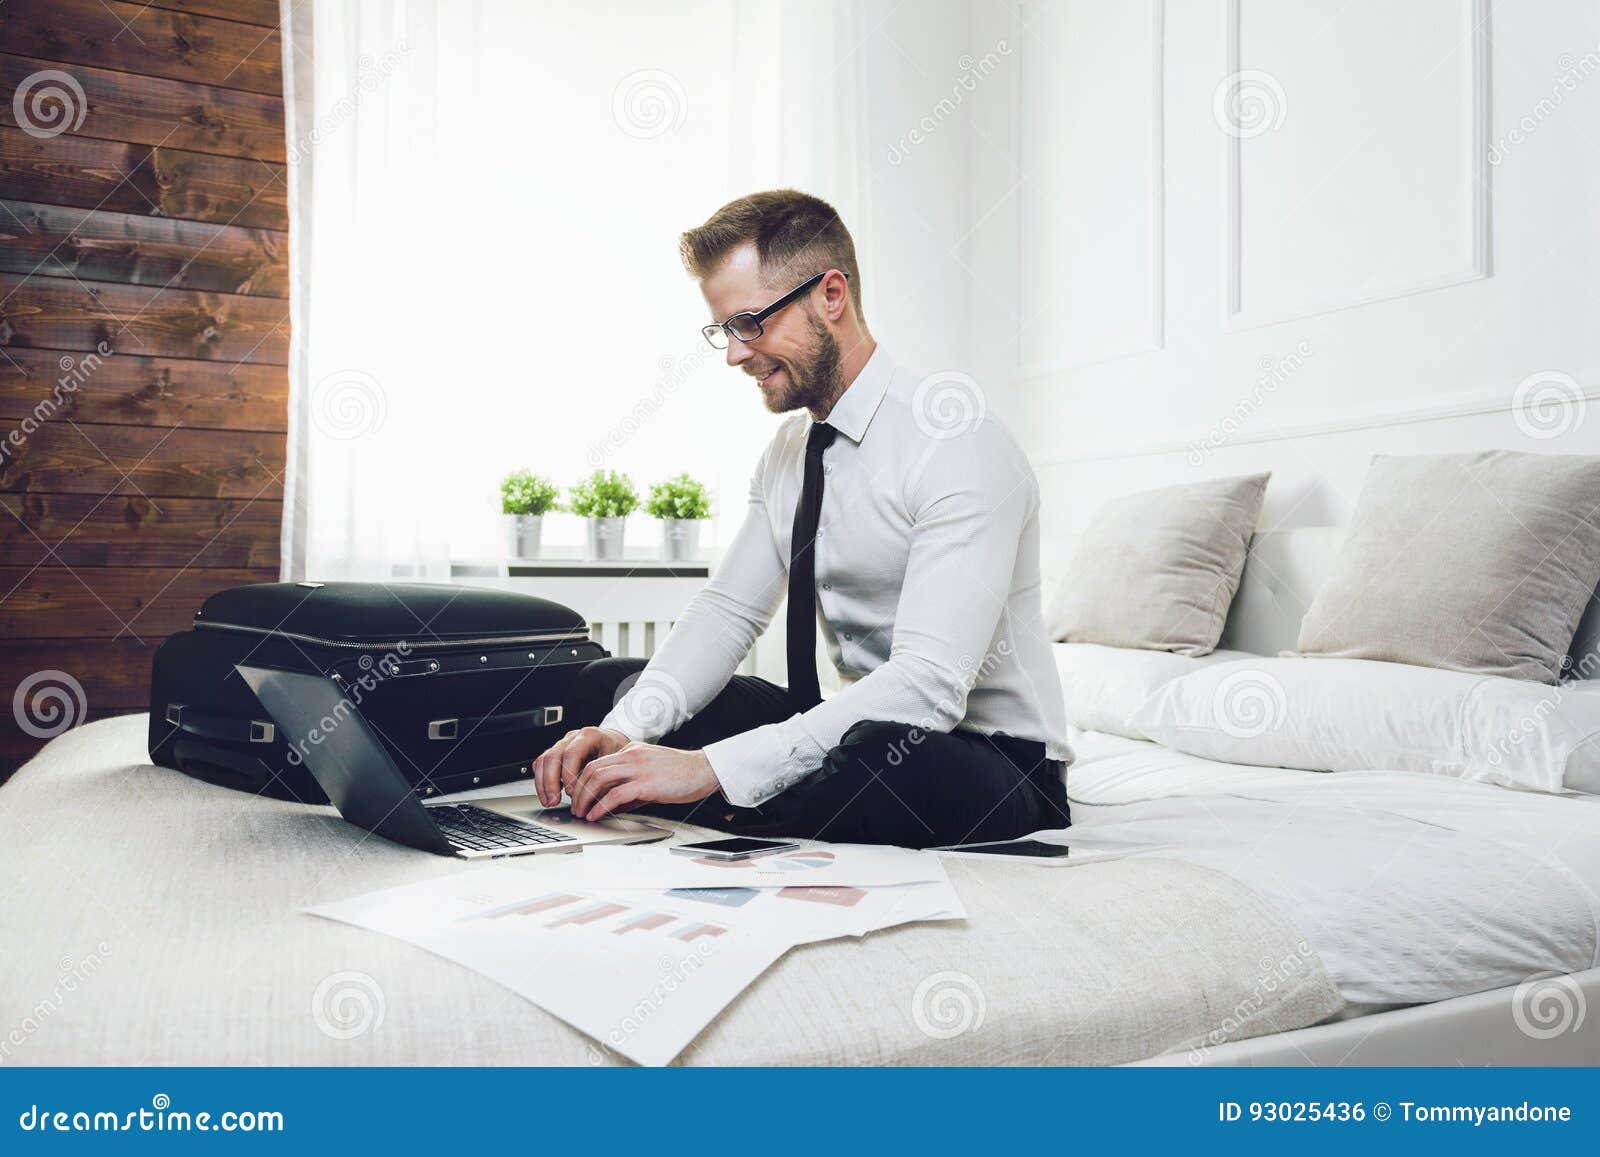 Где можно поработать с ноутбуком в москве. Мужчина на кровати с ноутбуком. Бизнесмен на кровати в отеле. Парень сидит на кровати с ноутбуком. Бизнесмен с ноутбуком.